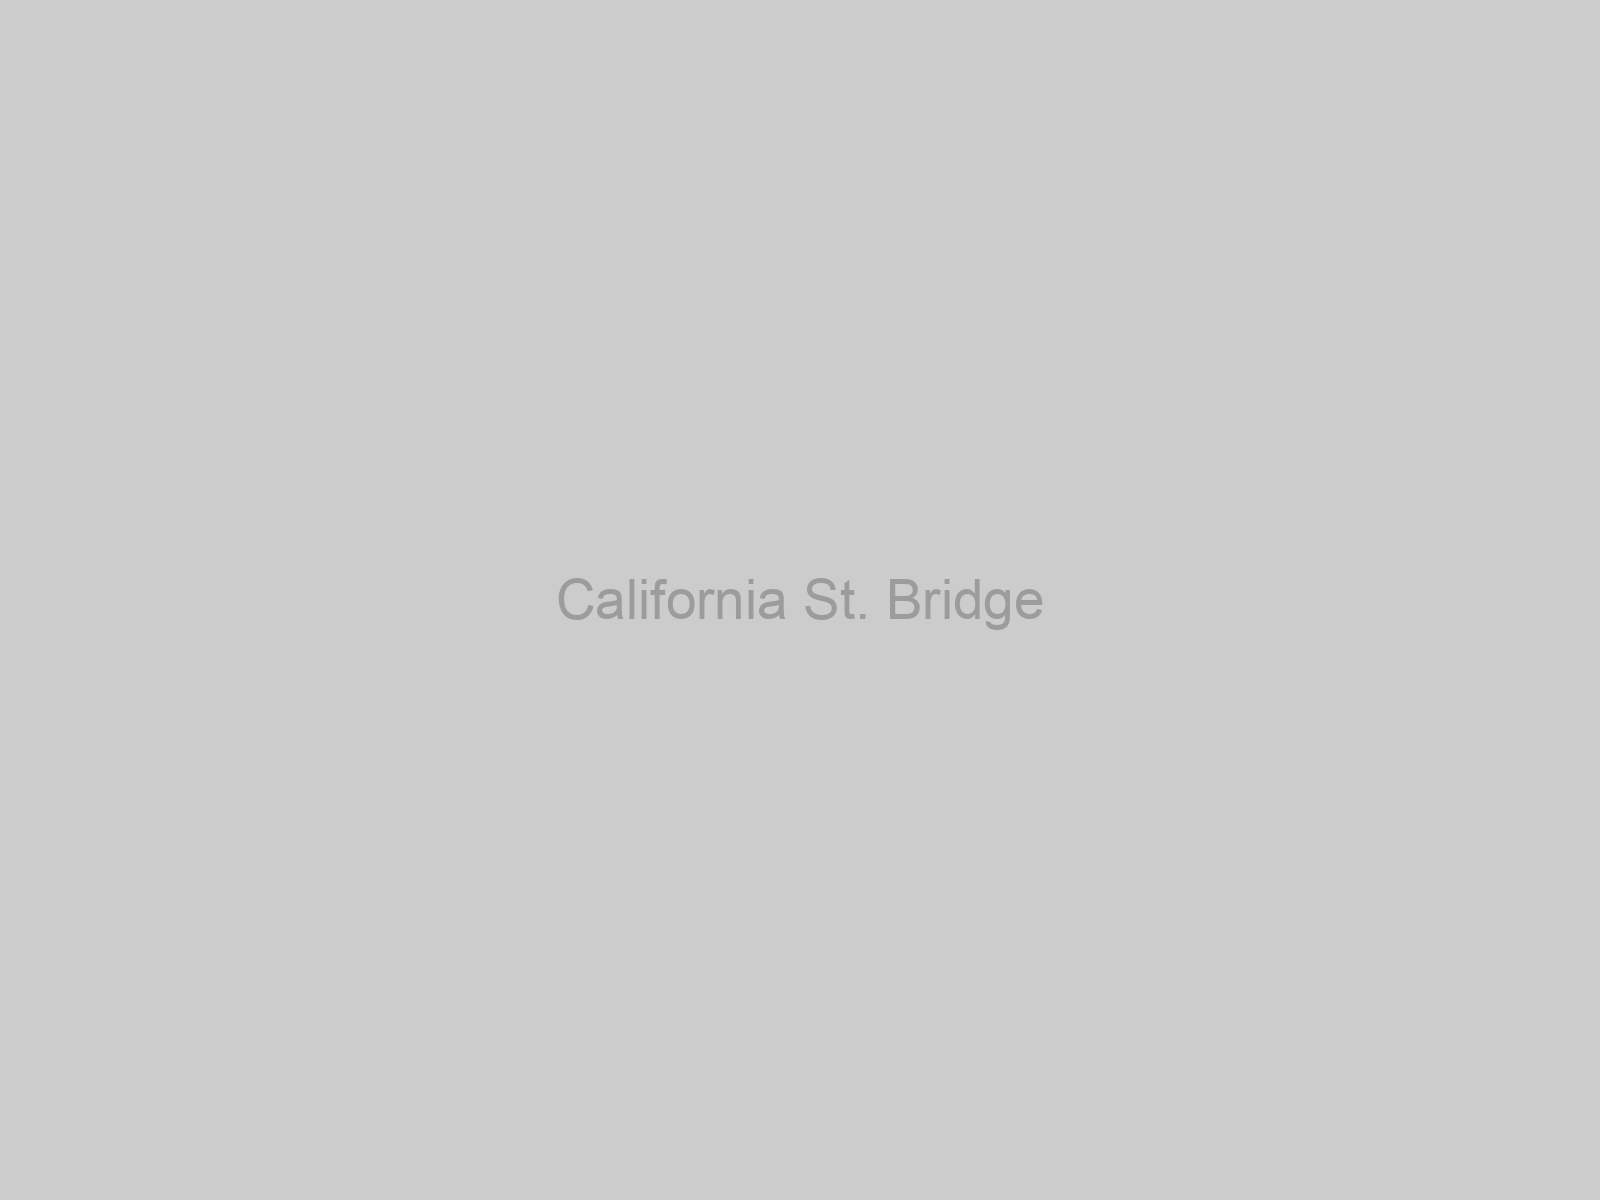 California St. Bridge